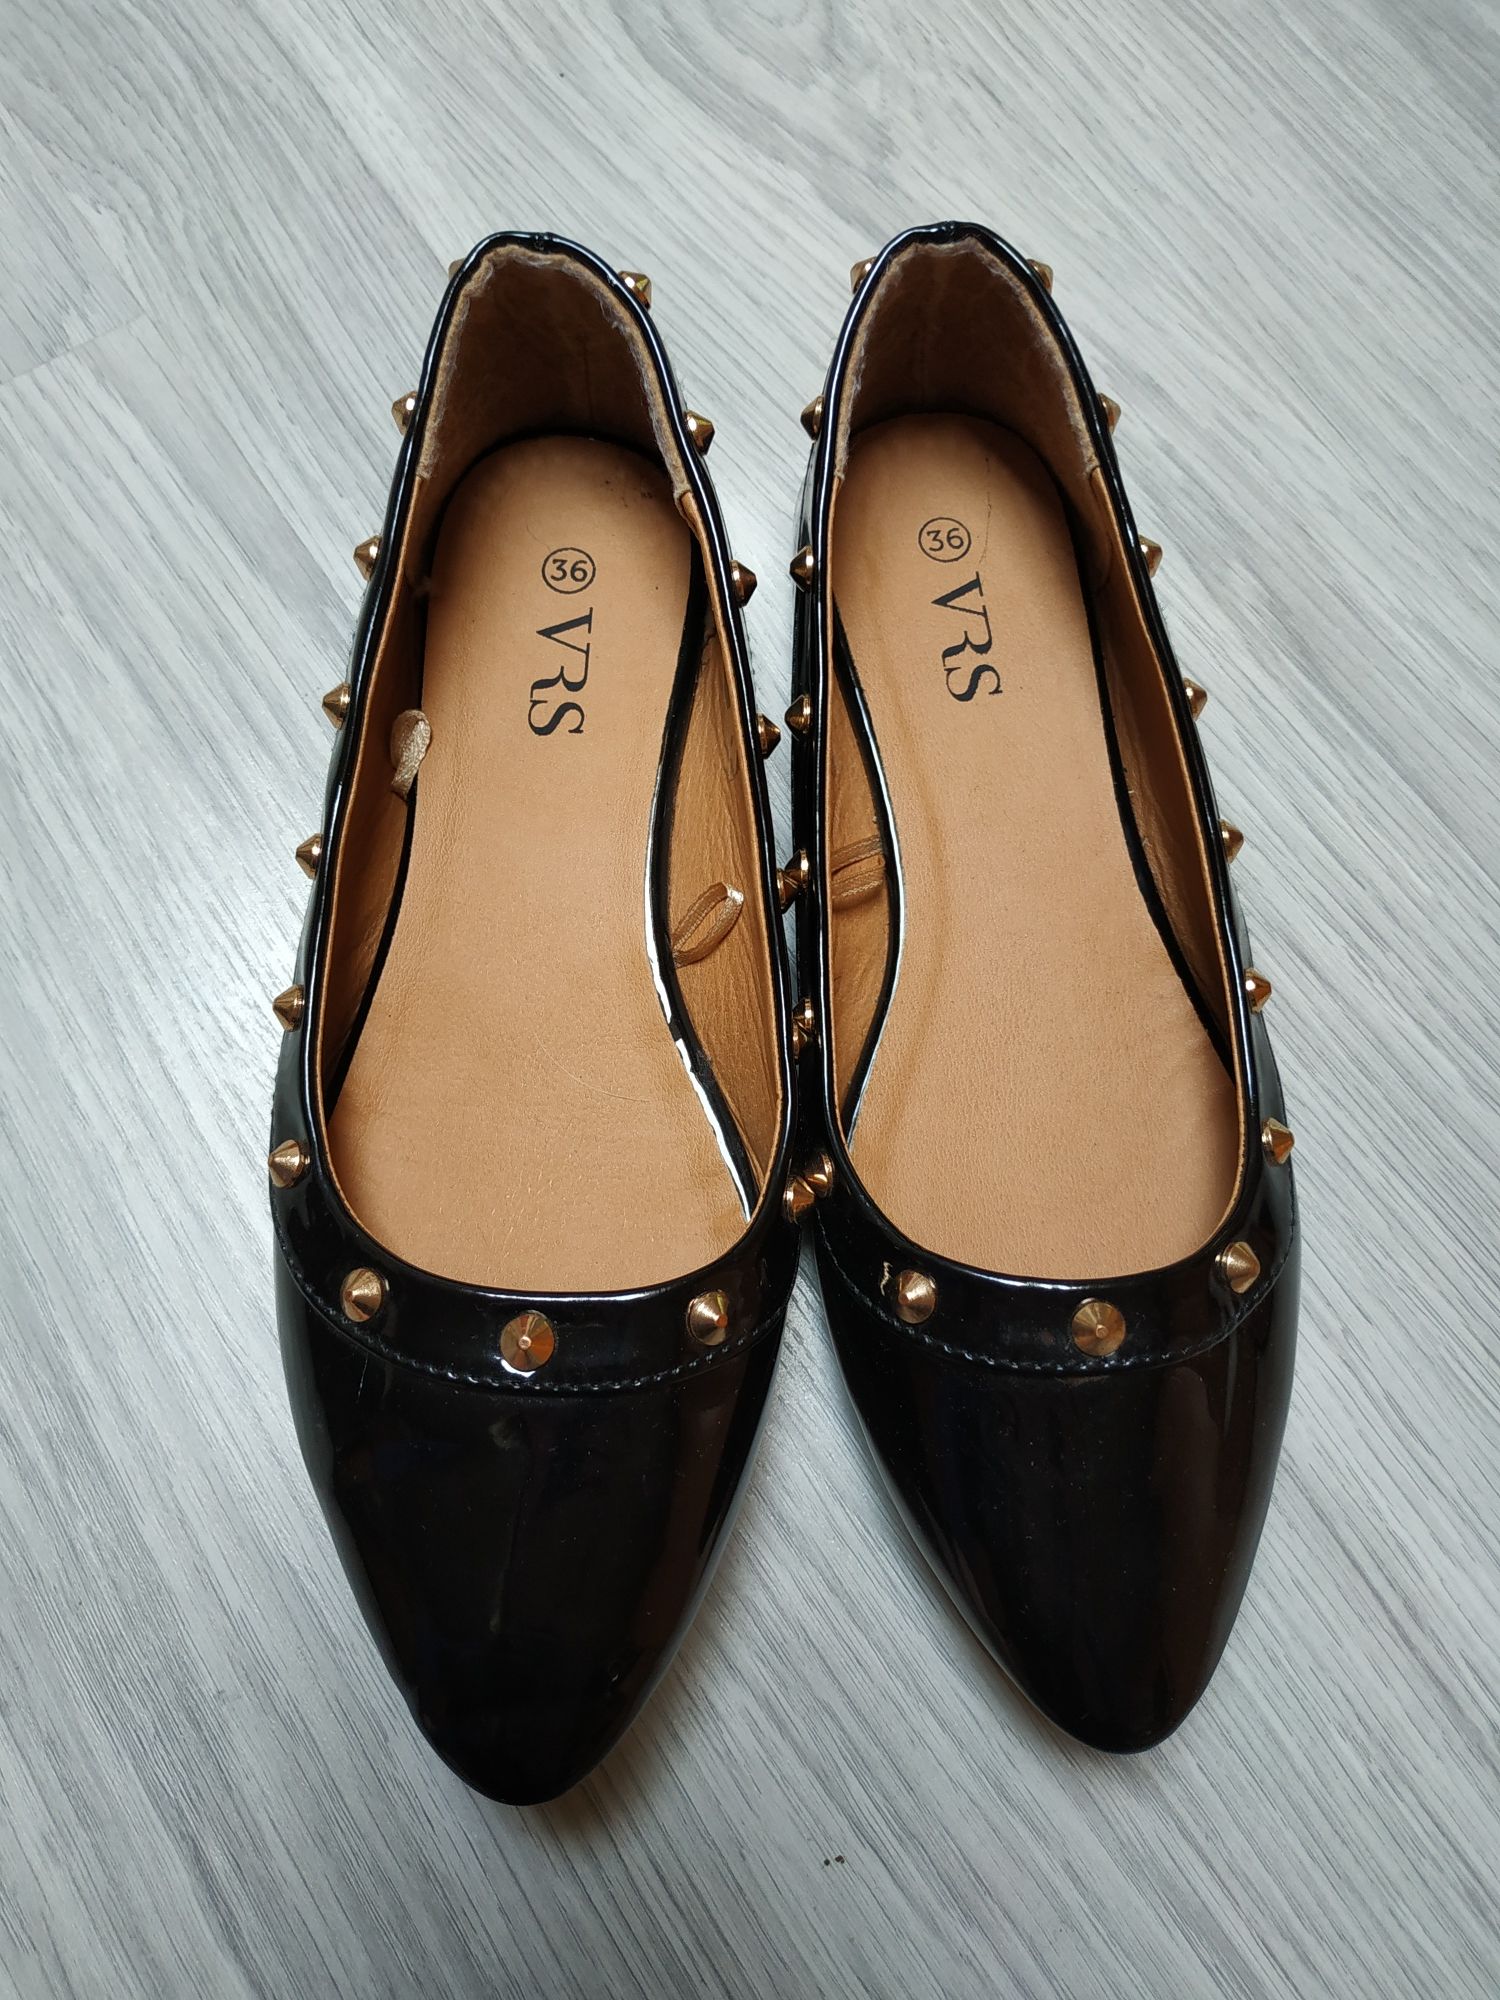 Baleriny damskie obuwie eleganckie buty płaskie wizytowe dziewczęce 35